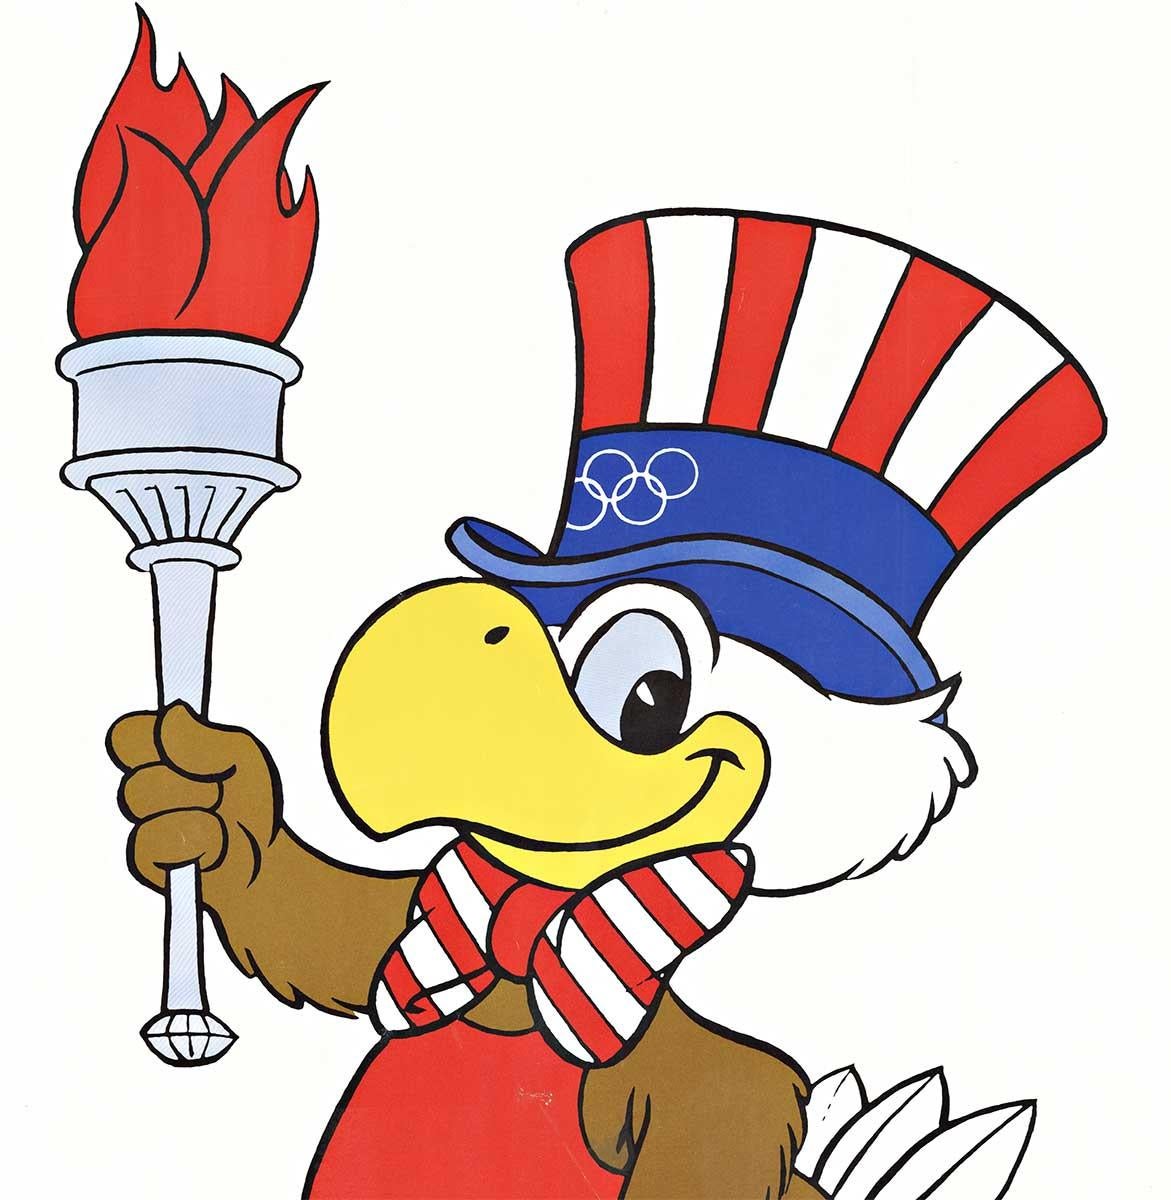 sam the eagle 1984 olympics